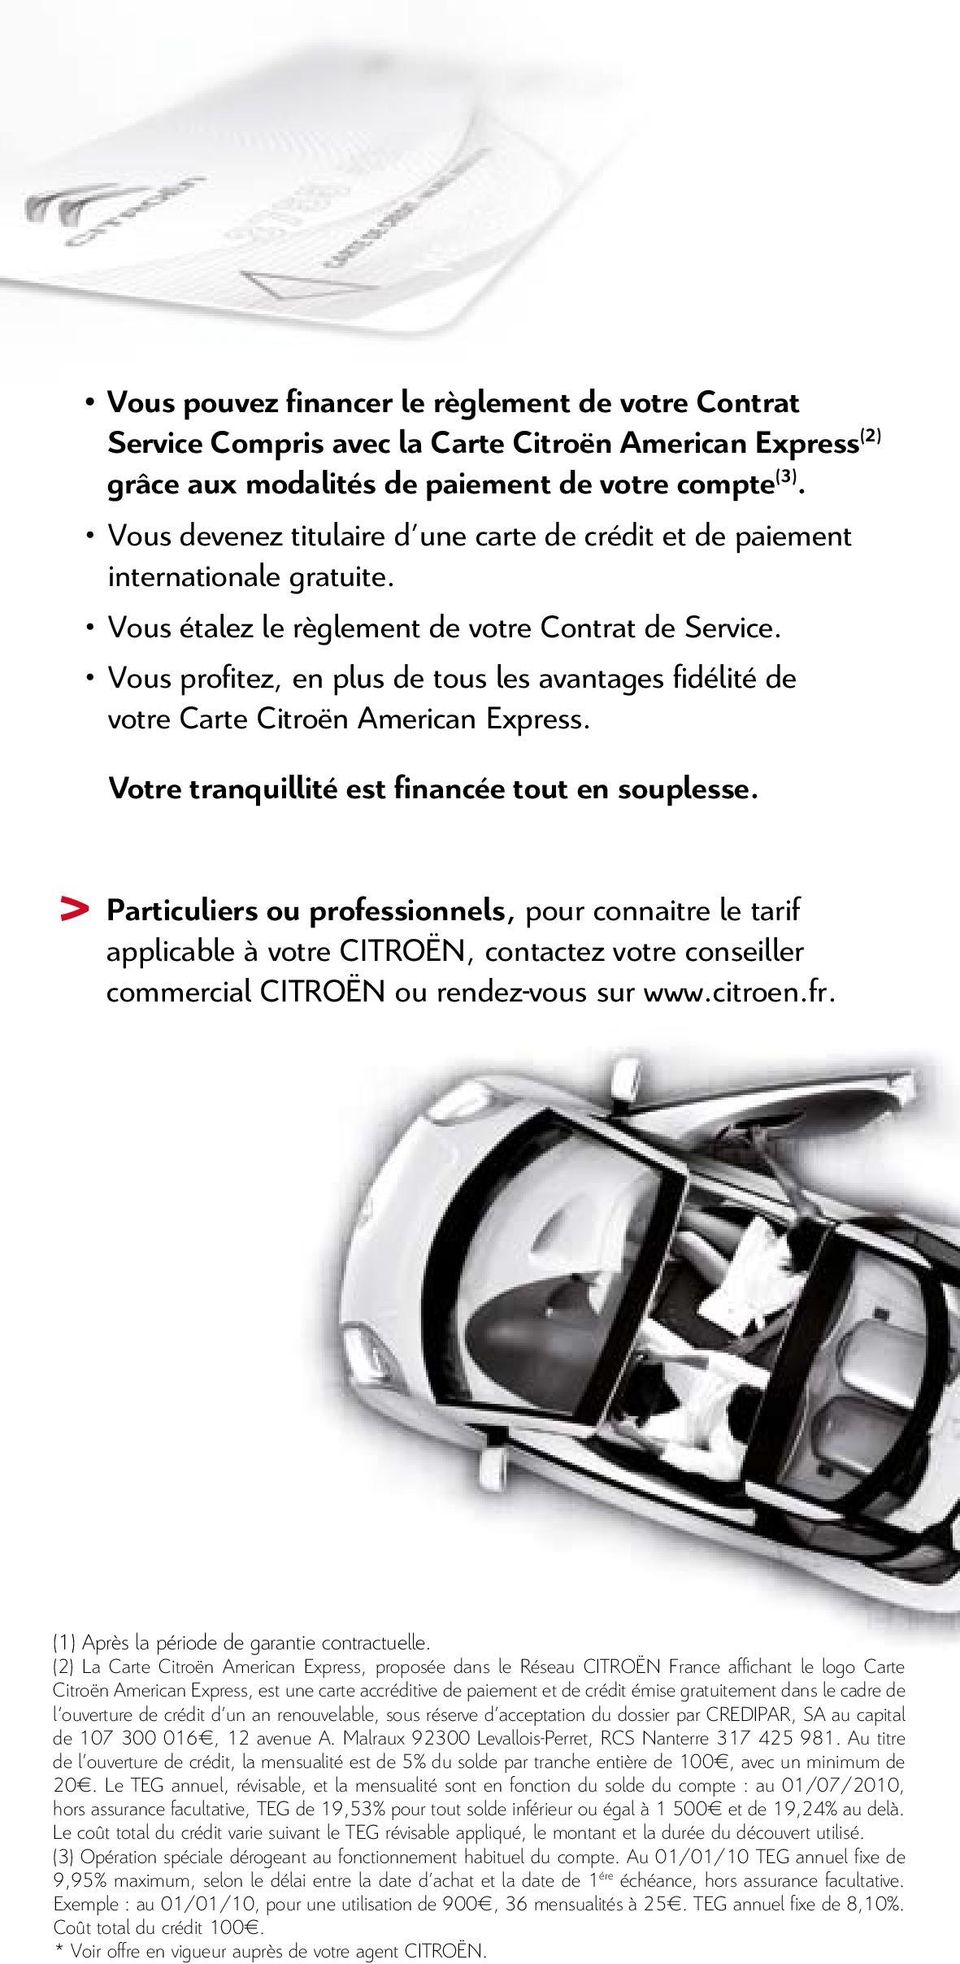 Vous profitez, en plus de tous les avantages fidélité de votre Carte Citroën American Express. Votre tranquillité est financée tout en souplesse.